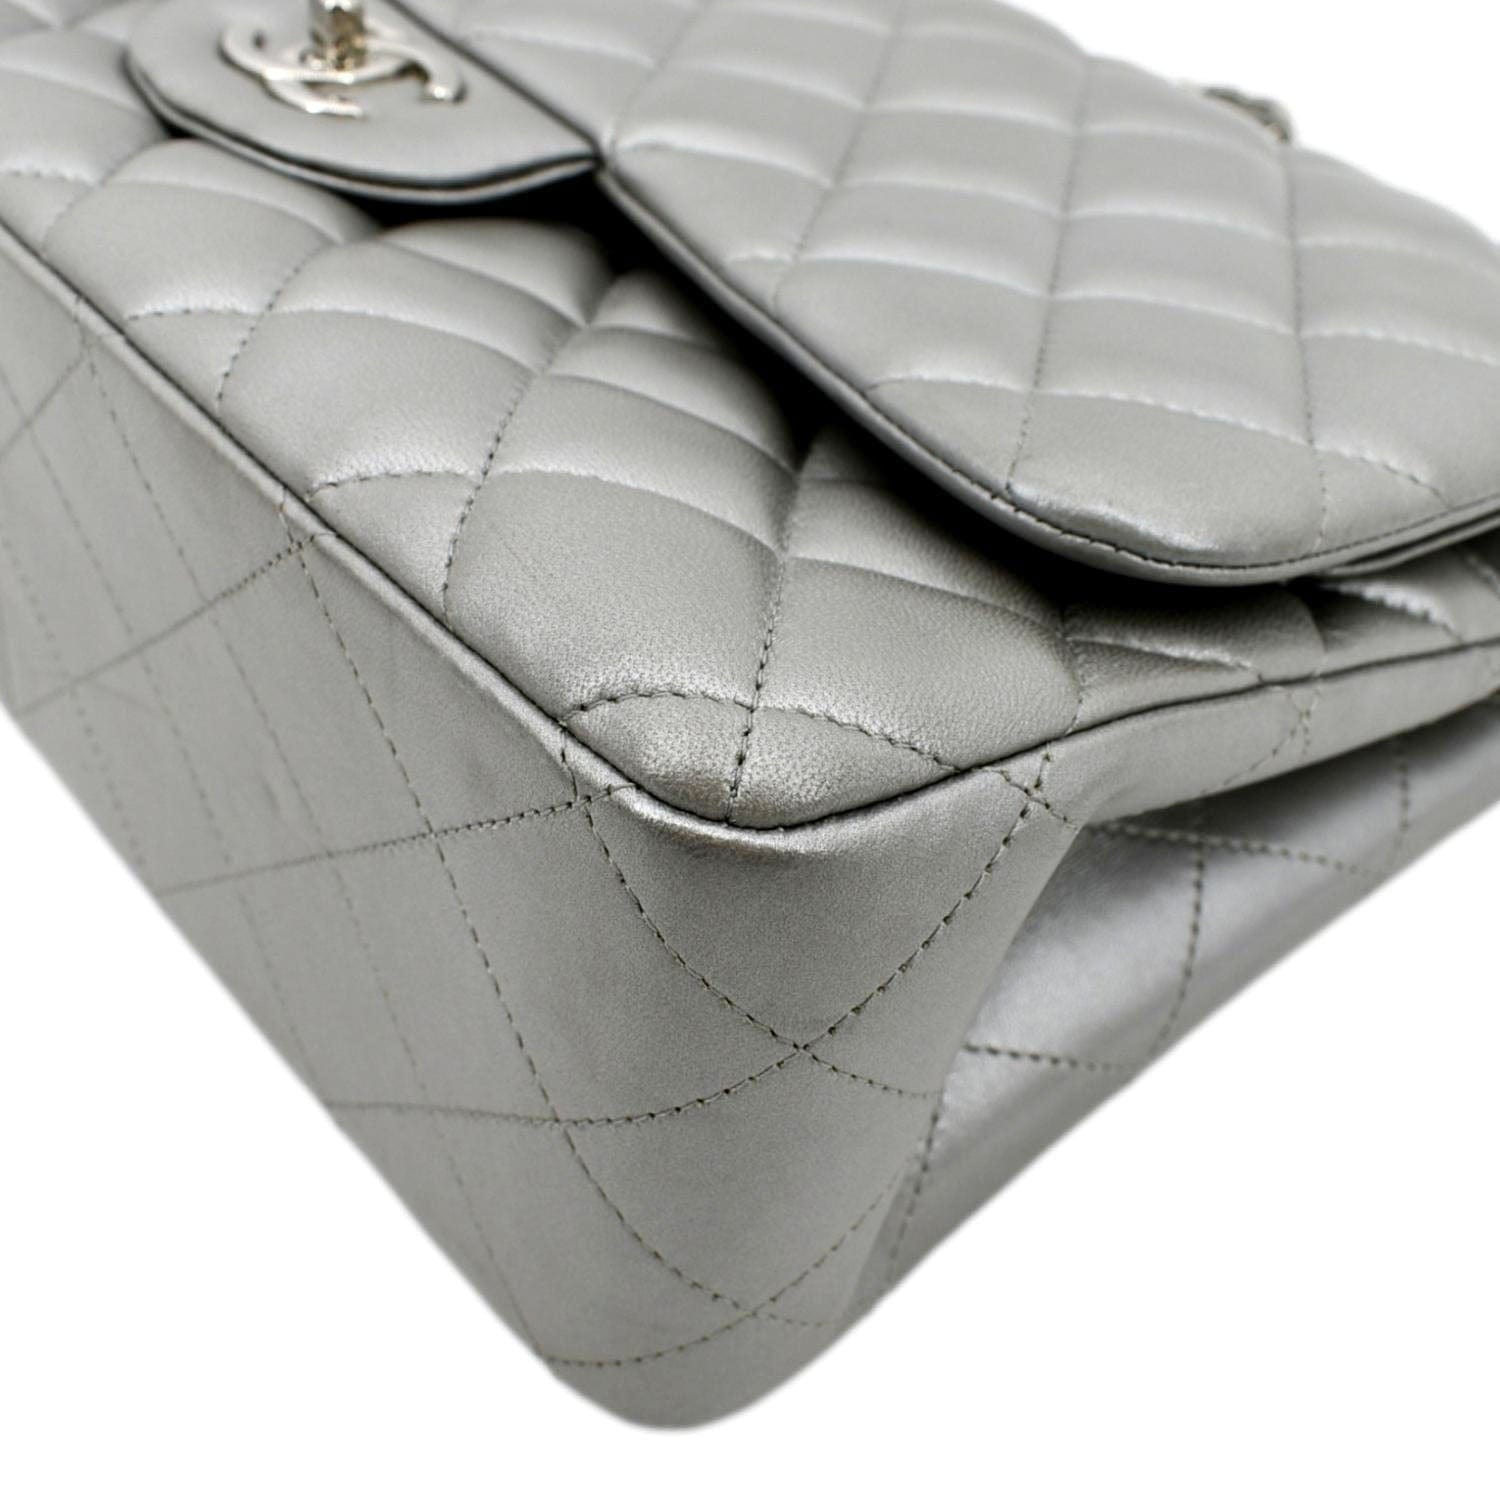 Chanel Jumbo Double Flap Bag  Bags, Women handbags, Chanel bag